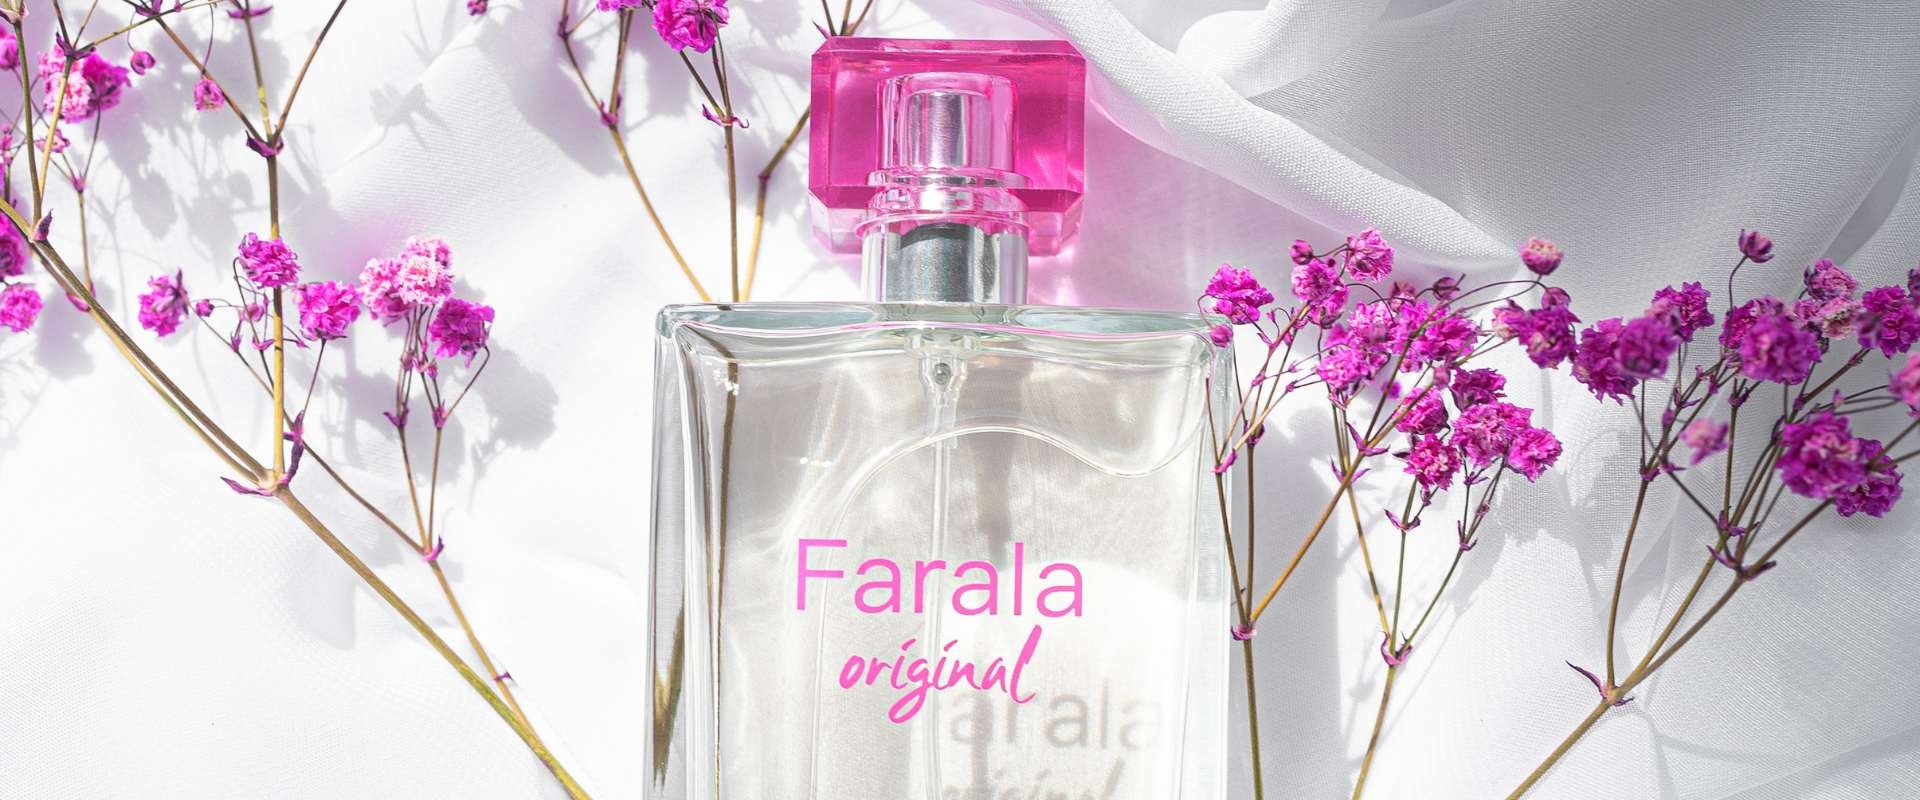 Los 4 mejores perfumes que huelen a limpio para ella y para él 